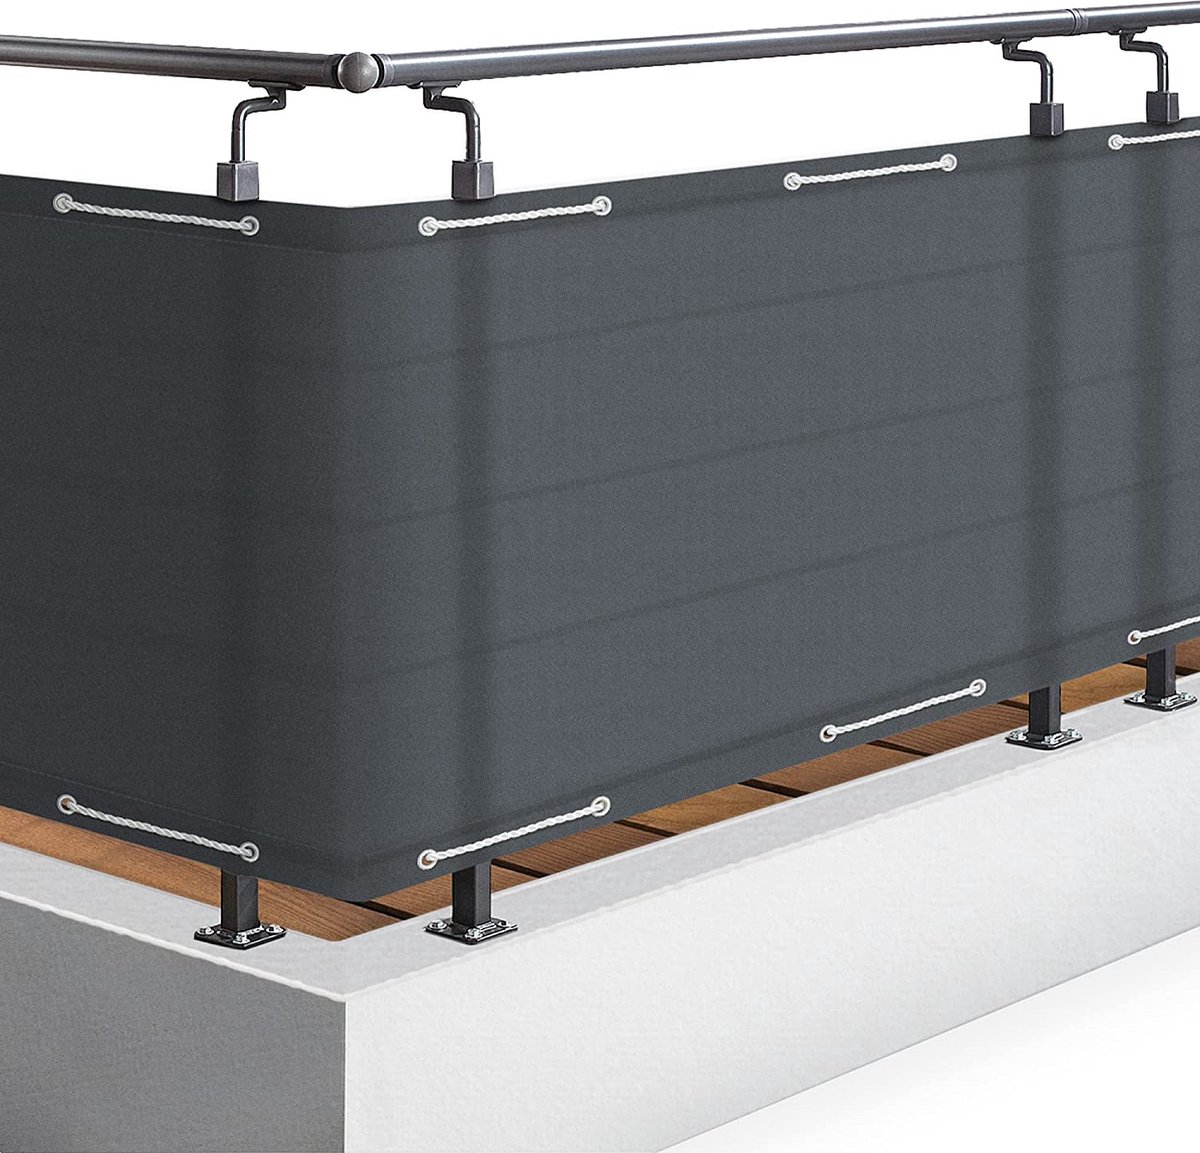 Balkonscherm 90x500cm - Privacy en Bescherming tegen Wind en Zon - Duurzaam en Eenvoudig te Bevestigen - Perfect voor Balkons en Terrassen